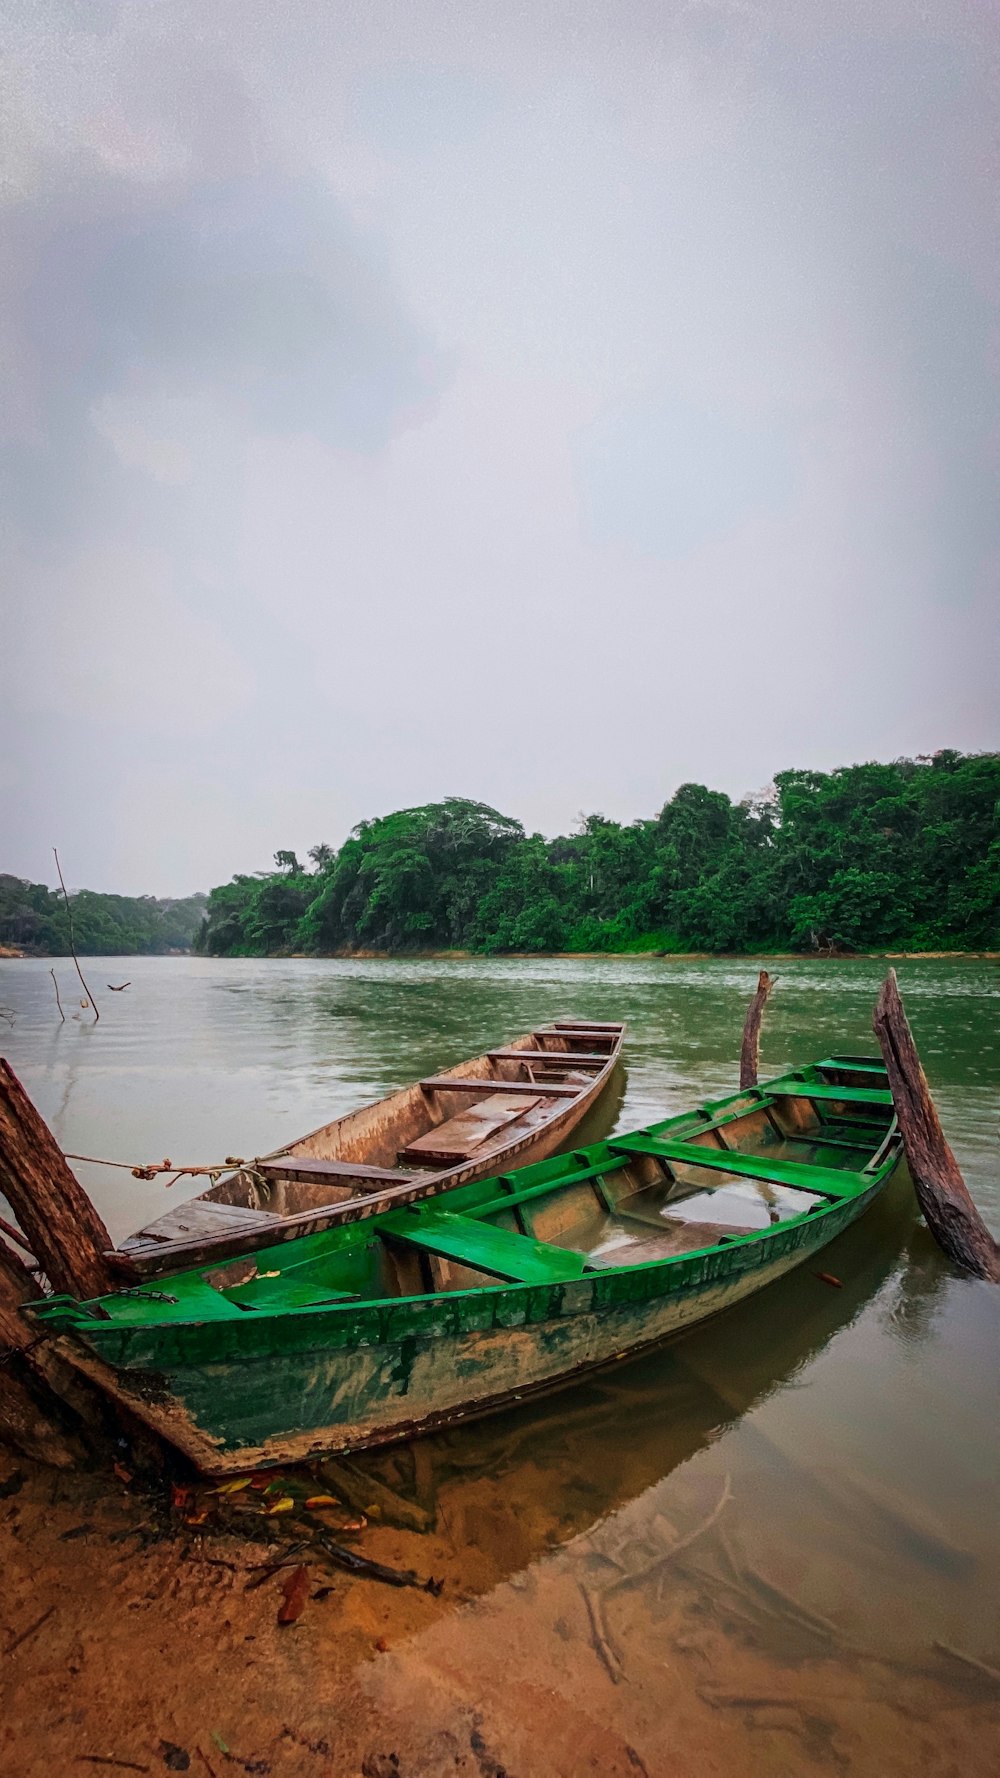 bateau en bois vert et brun sur le plan d’eau pendant la journée